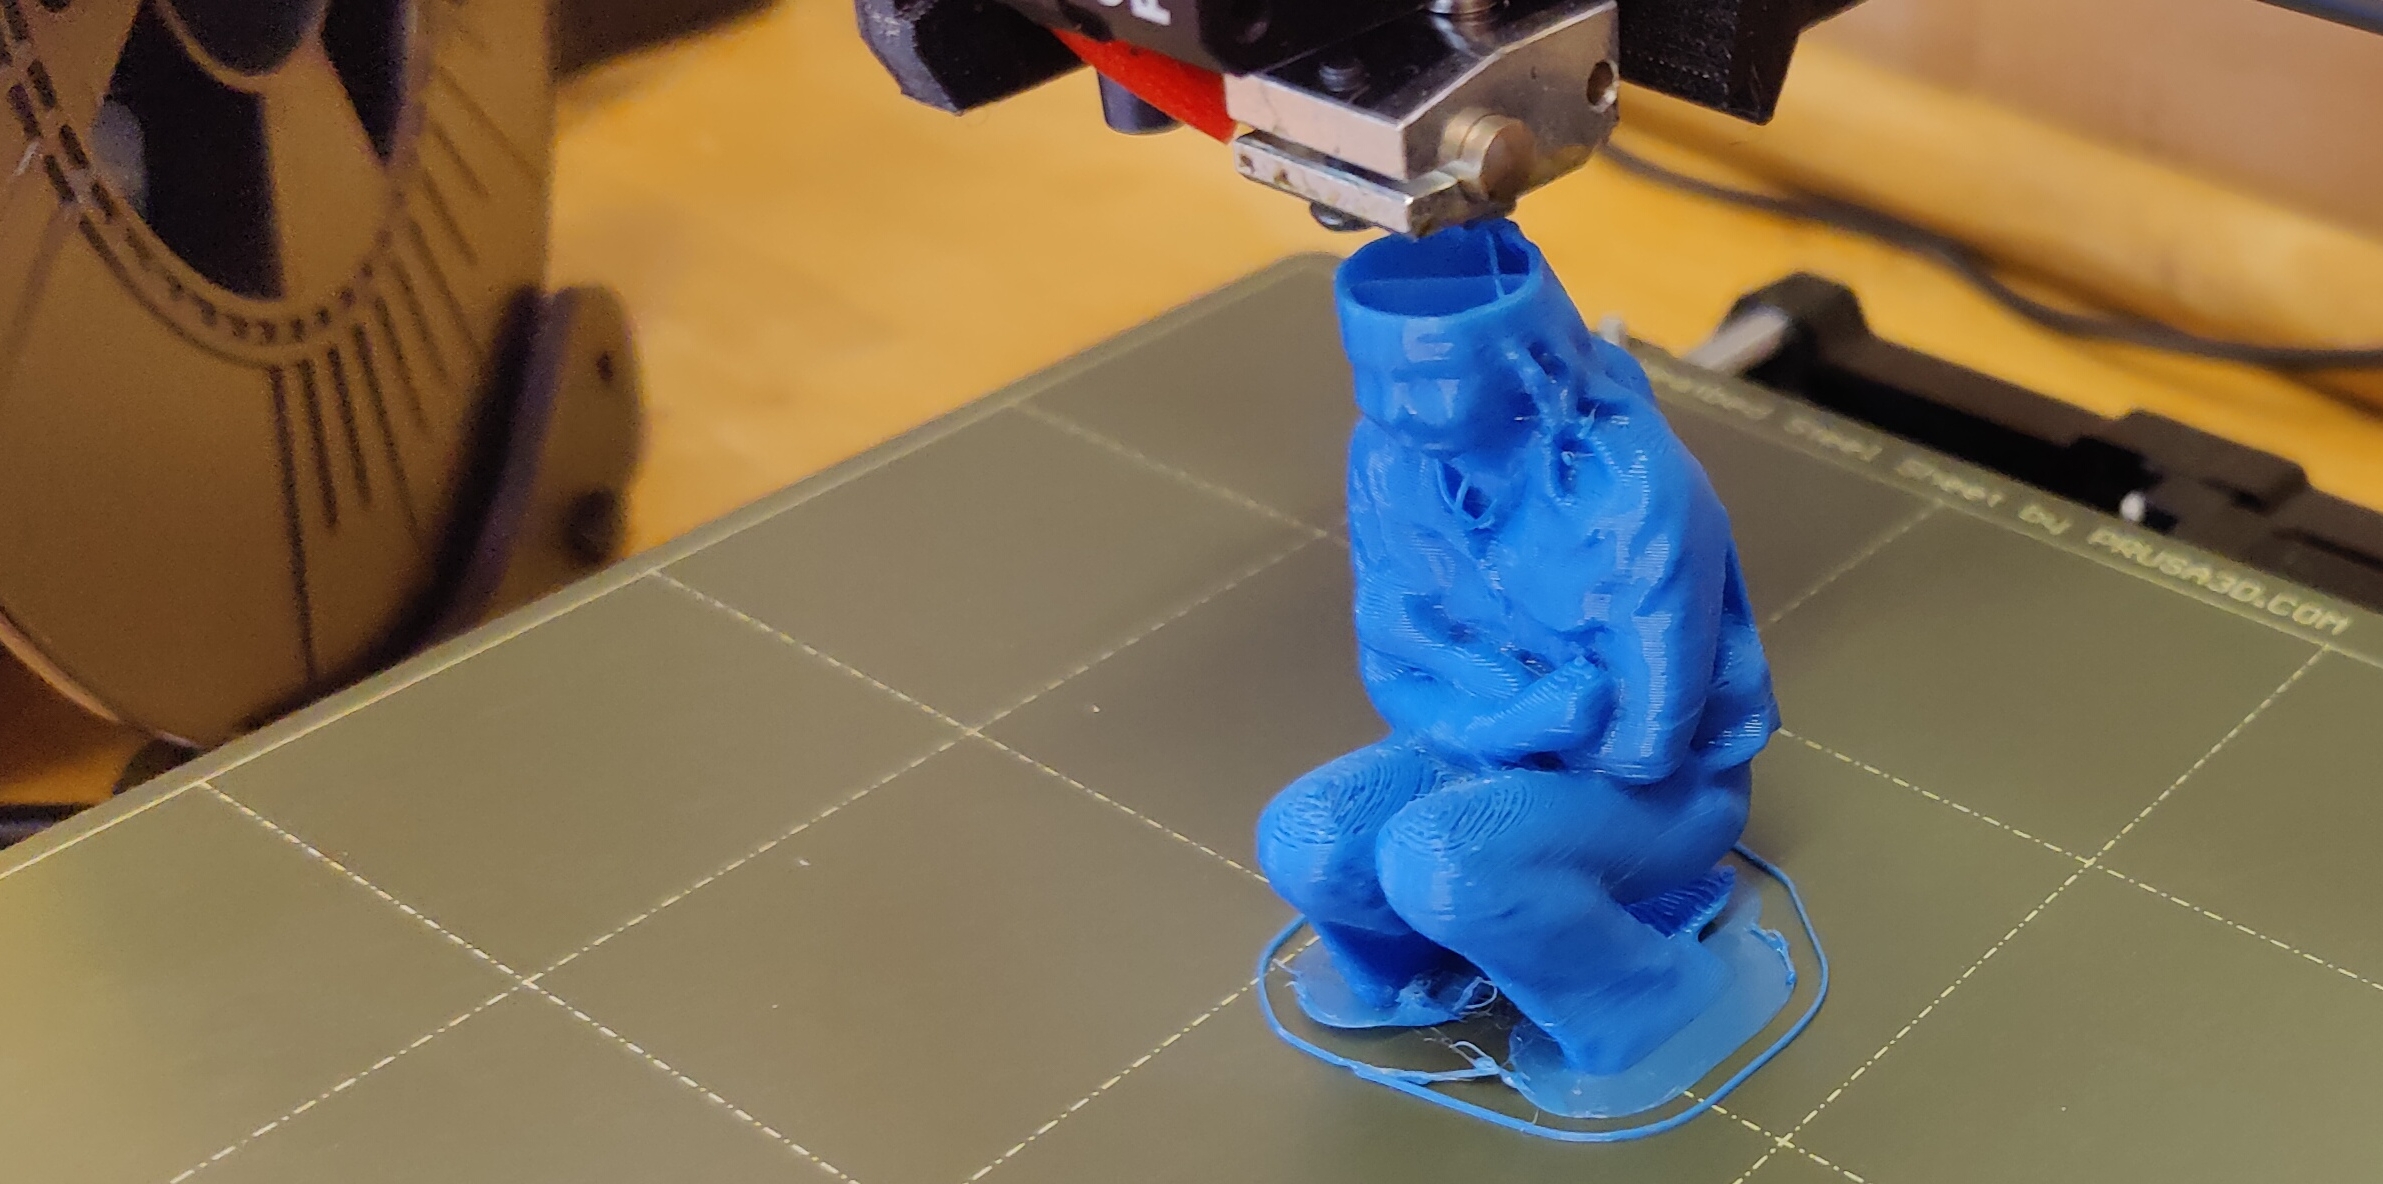 Hoe kan ik mijzelf 3D printen met de kinect scanner